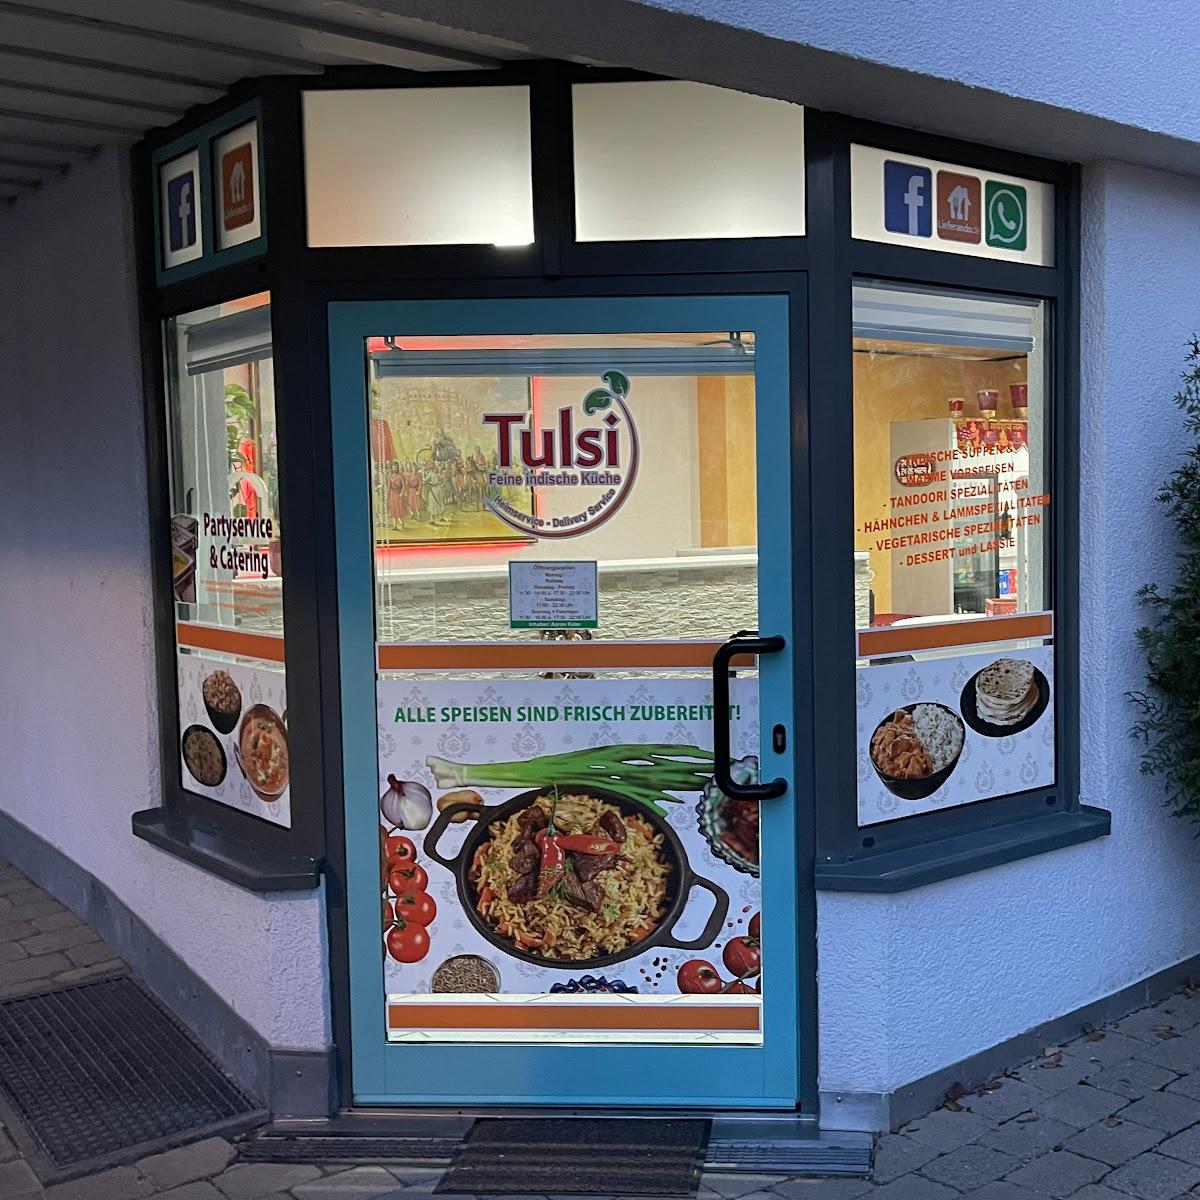 Restaurant "Tulsi Heimservice" in Pliezhausen